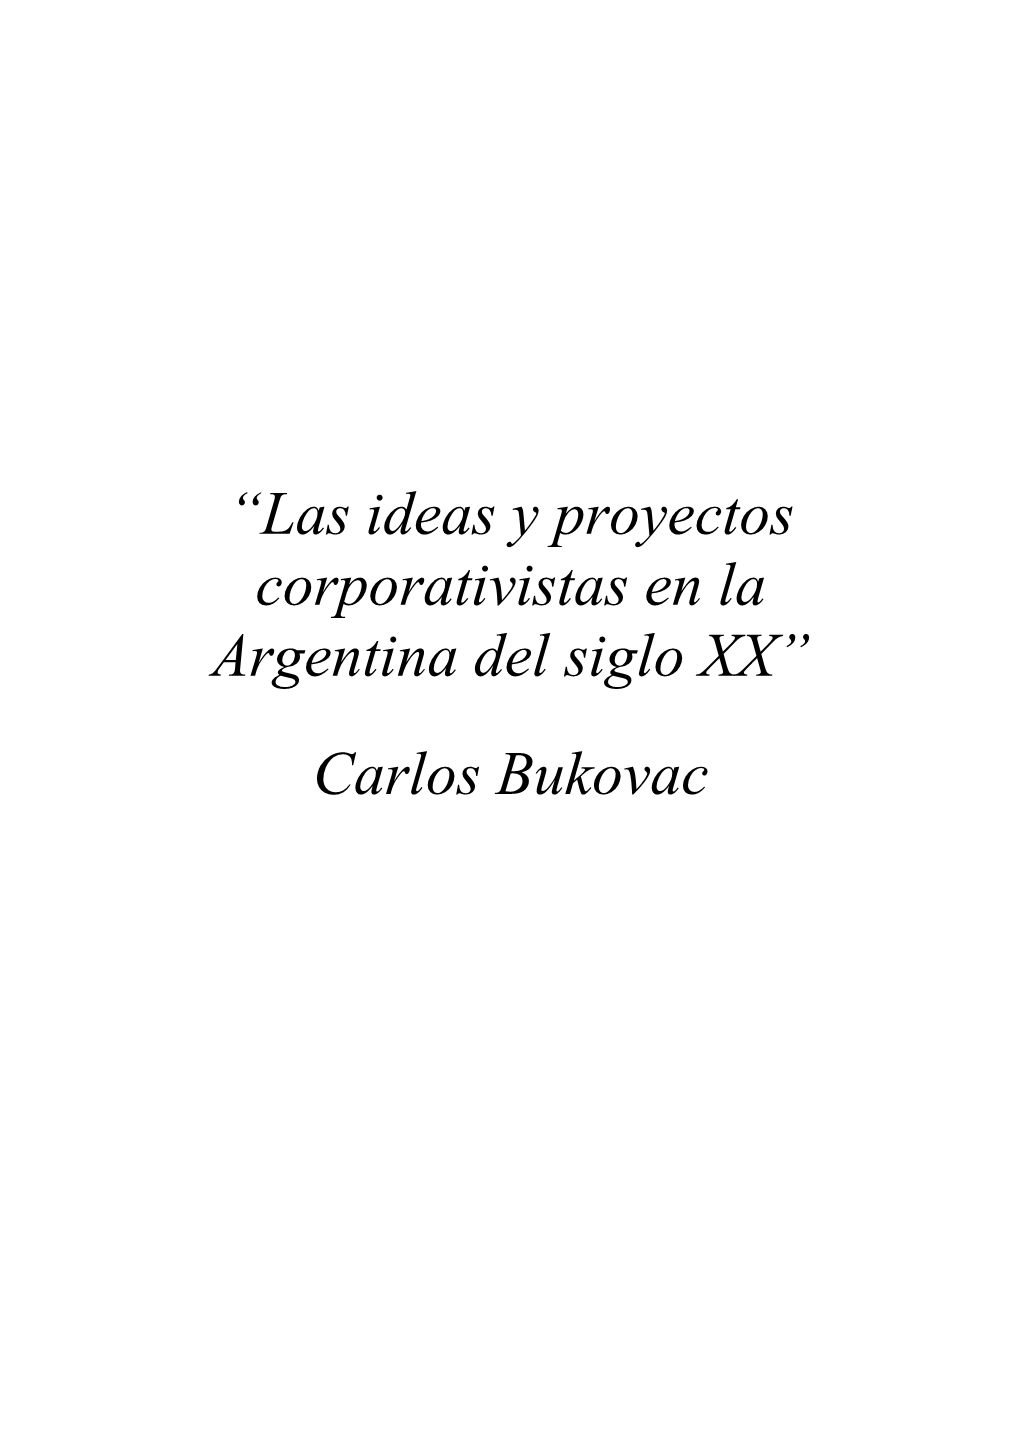 Las Ideas Y Proyectos Corporativistas En La Argentina Del Siglo XX, Corresponde Ahora Señalar Algunos Elementos a Título De Conclusión